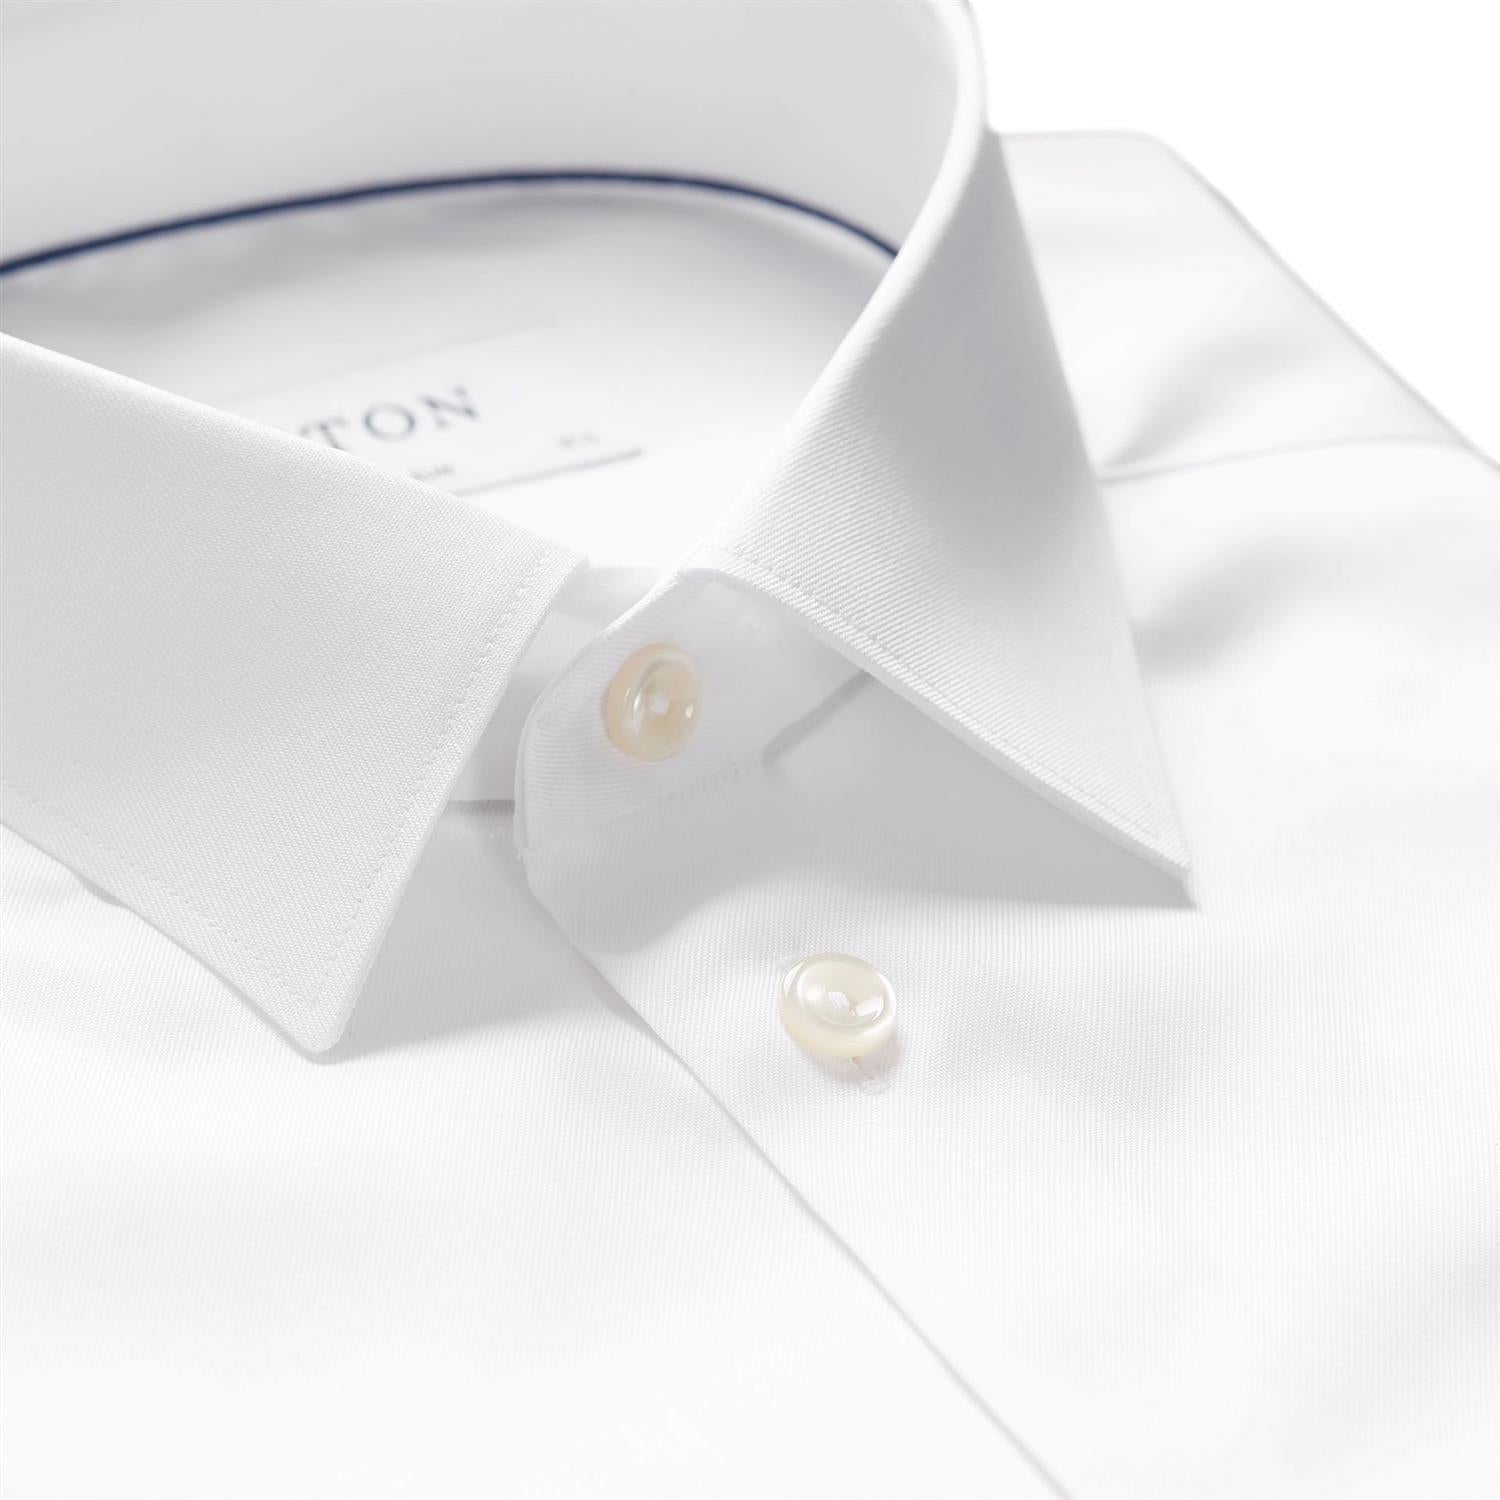 Eton 3000 Super Slim White Signature Twill Shirt Skjorte Hvit - [modostore.no]